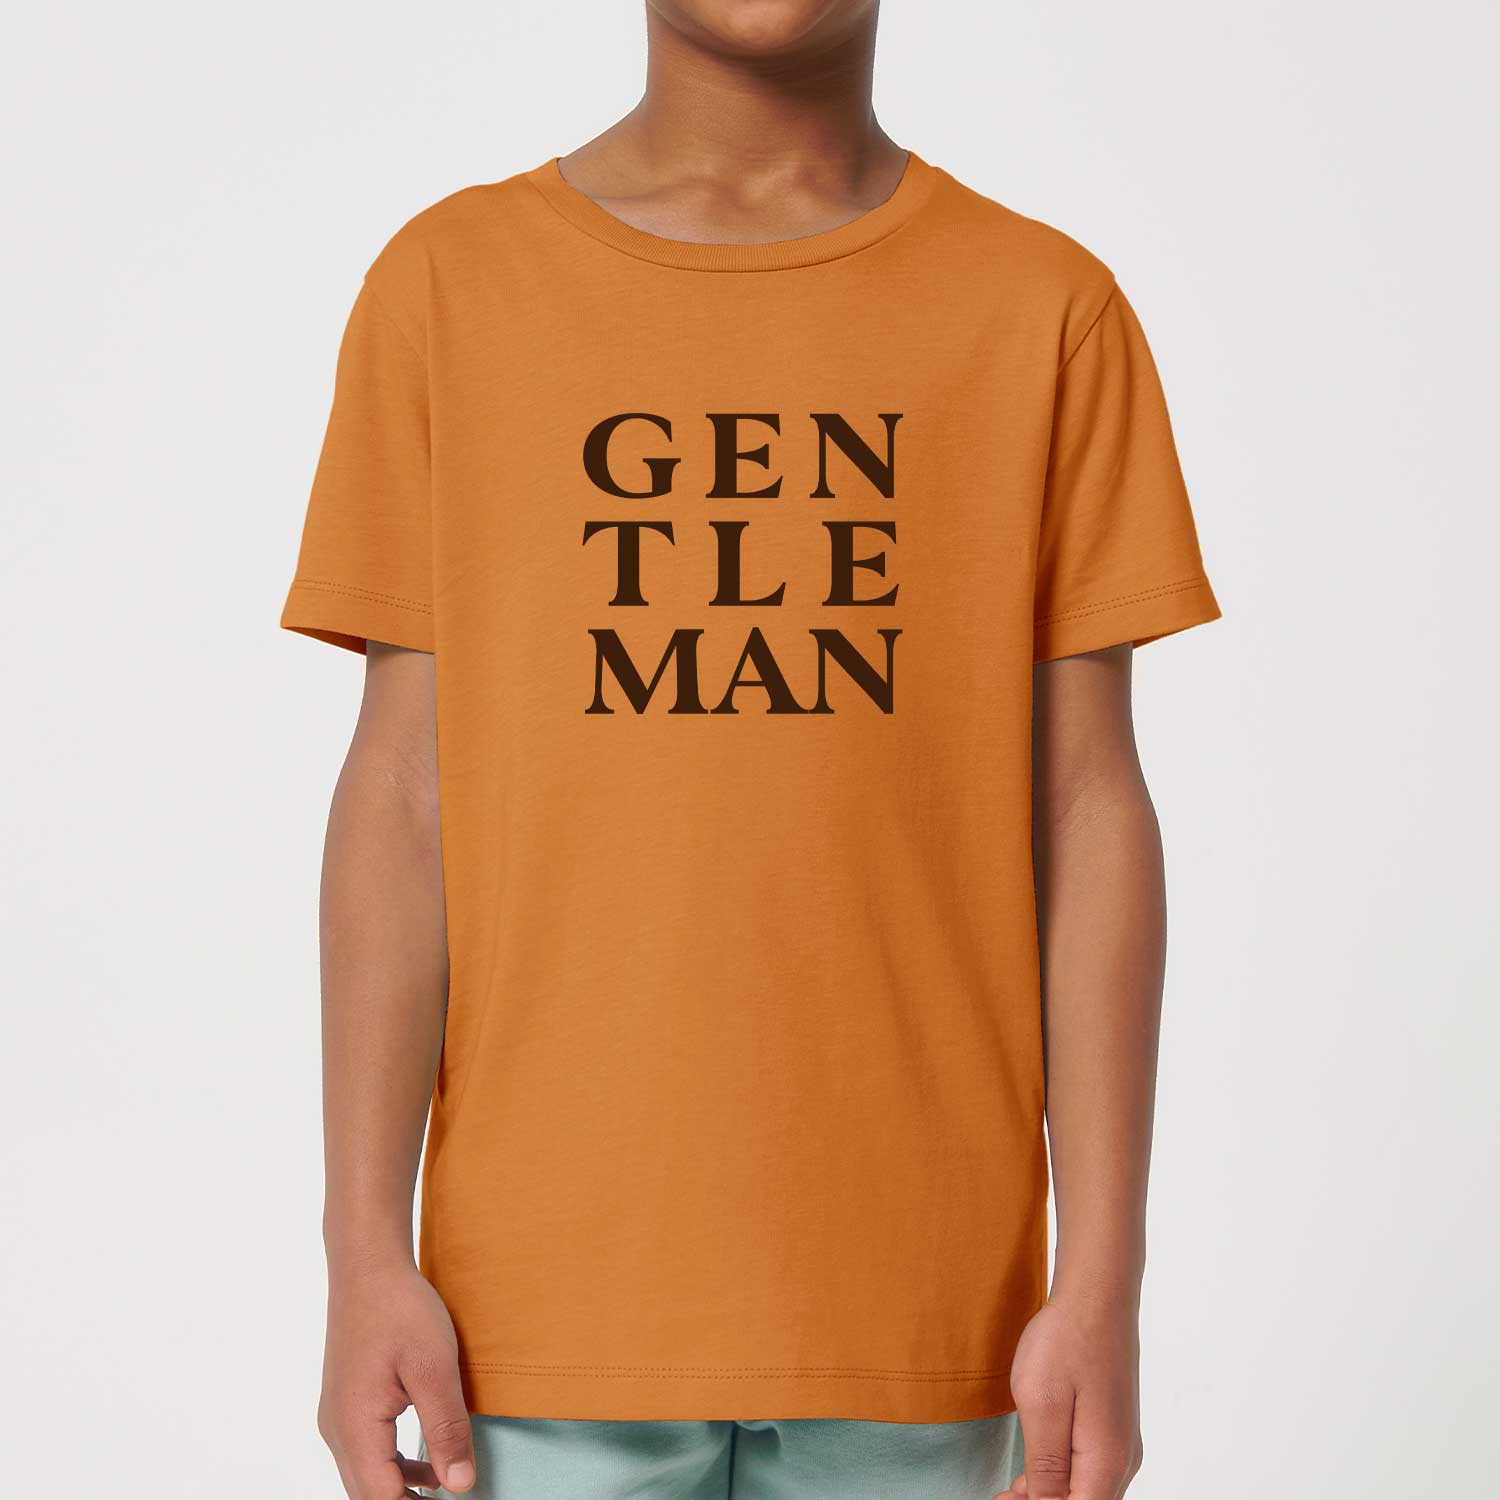 Kids T-Shirt - Gentleman